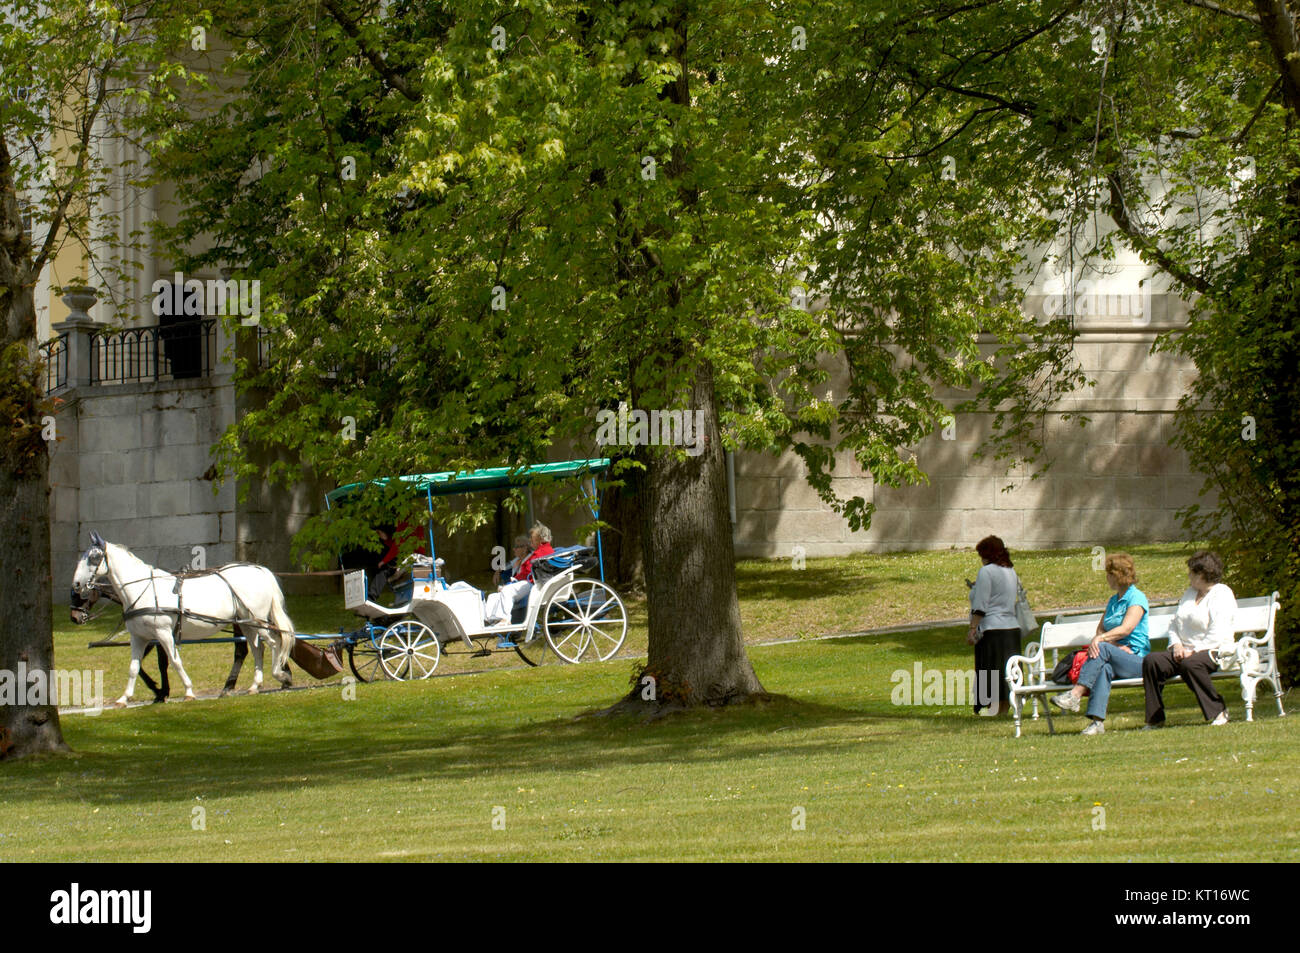 Tschechien, Bˆhmen : Marienbad, Kutschen im Kurpark, der von Skalnikgestaltet Gartenarchitekt Vaclav wurde. Banque D'Images